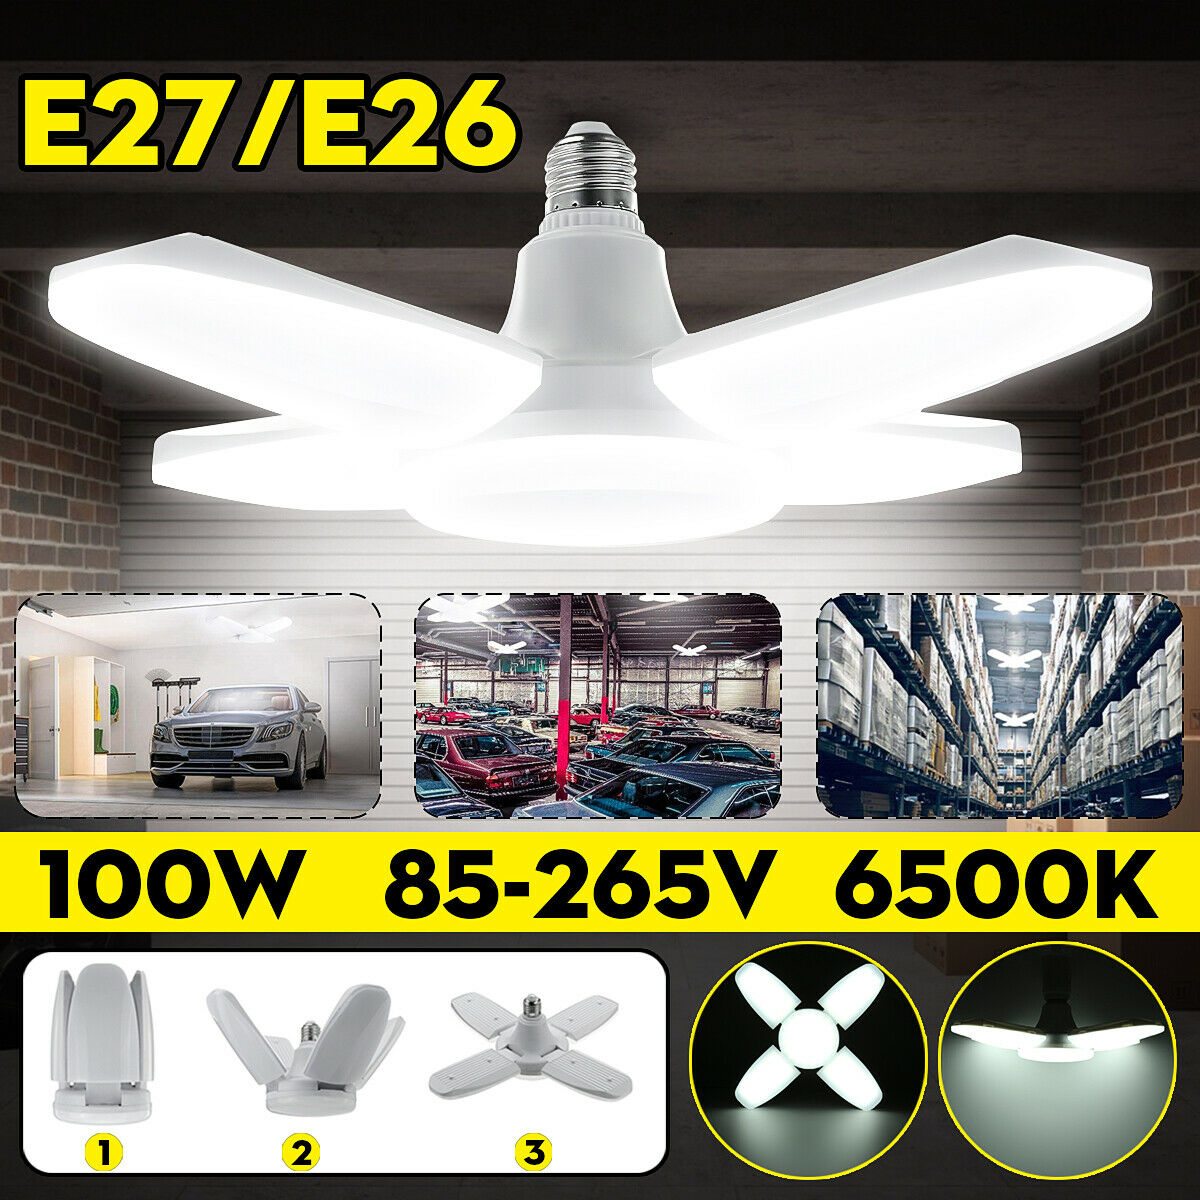 E27 85-265V Workshop Ceiling Lights Fixture Deformable Lamp Industrial Lighting 